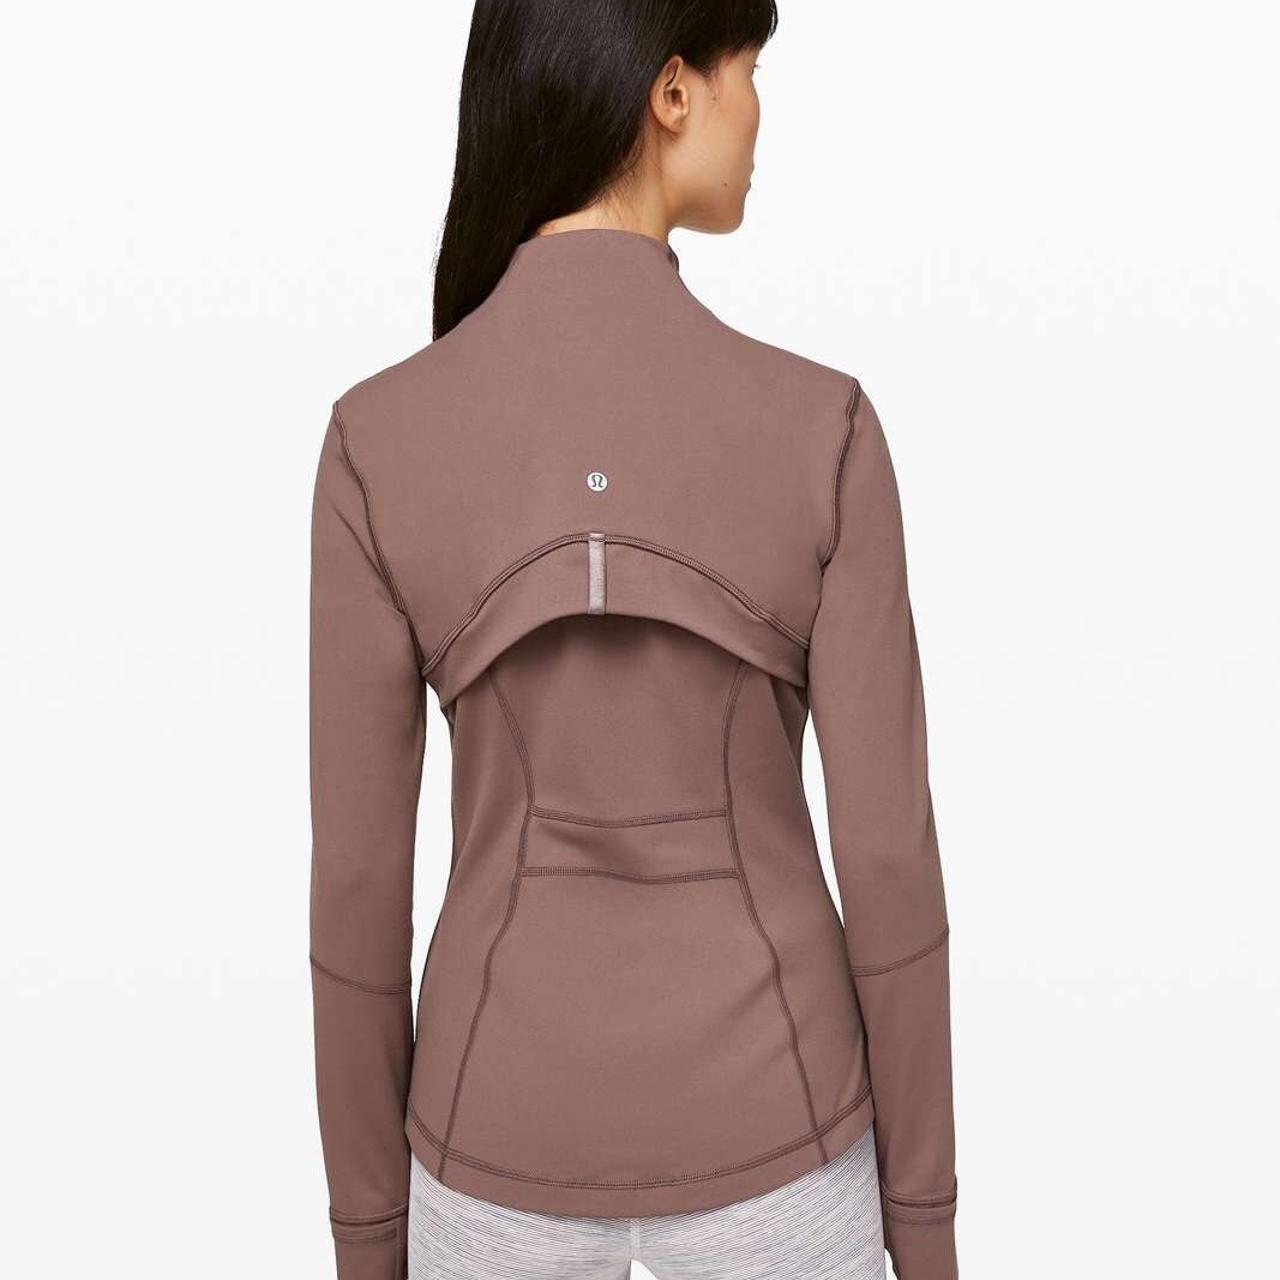 Lululemon Define Jacket Size 6 Shoulder 16' Bust - Depop